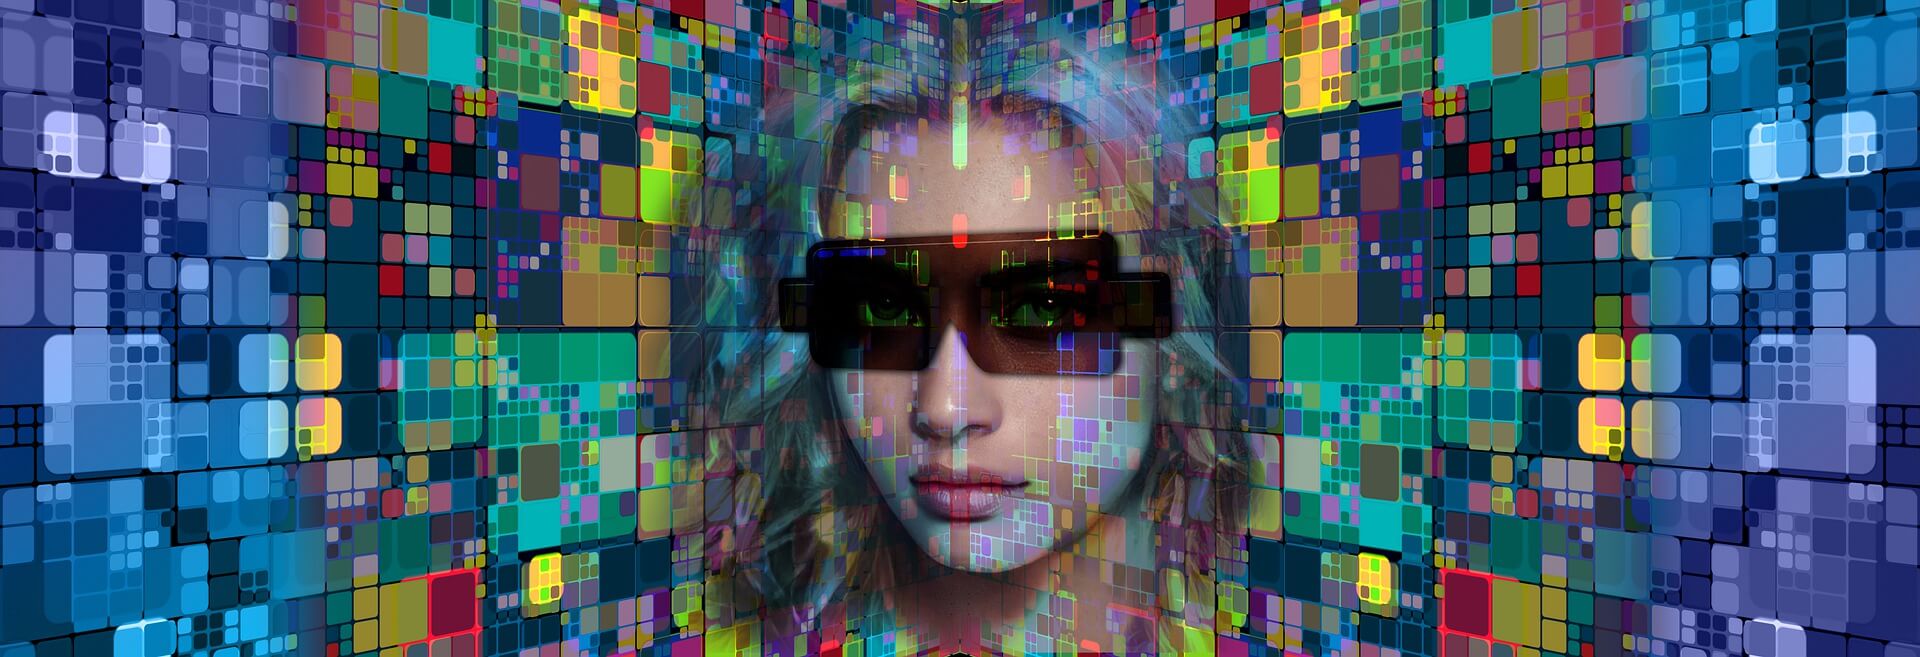 图片展示了一位佩戴墨镜的女性，背景是由多彩的立方体构成的抽象图案，整体给人一种科技感和未来主义的风格。